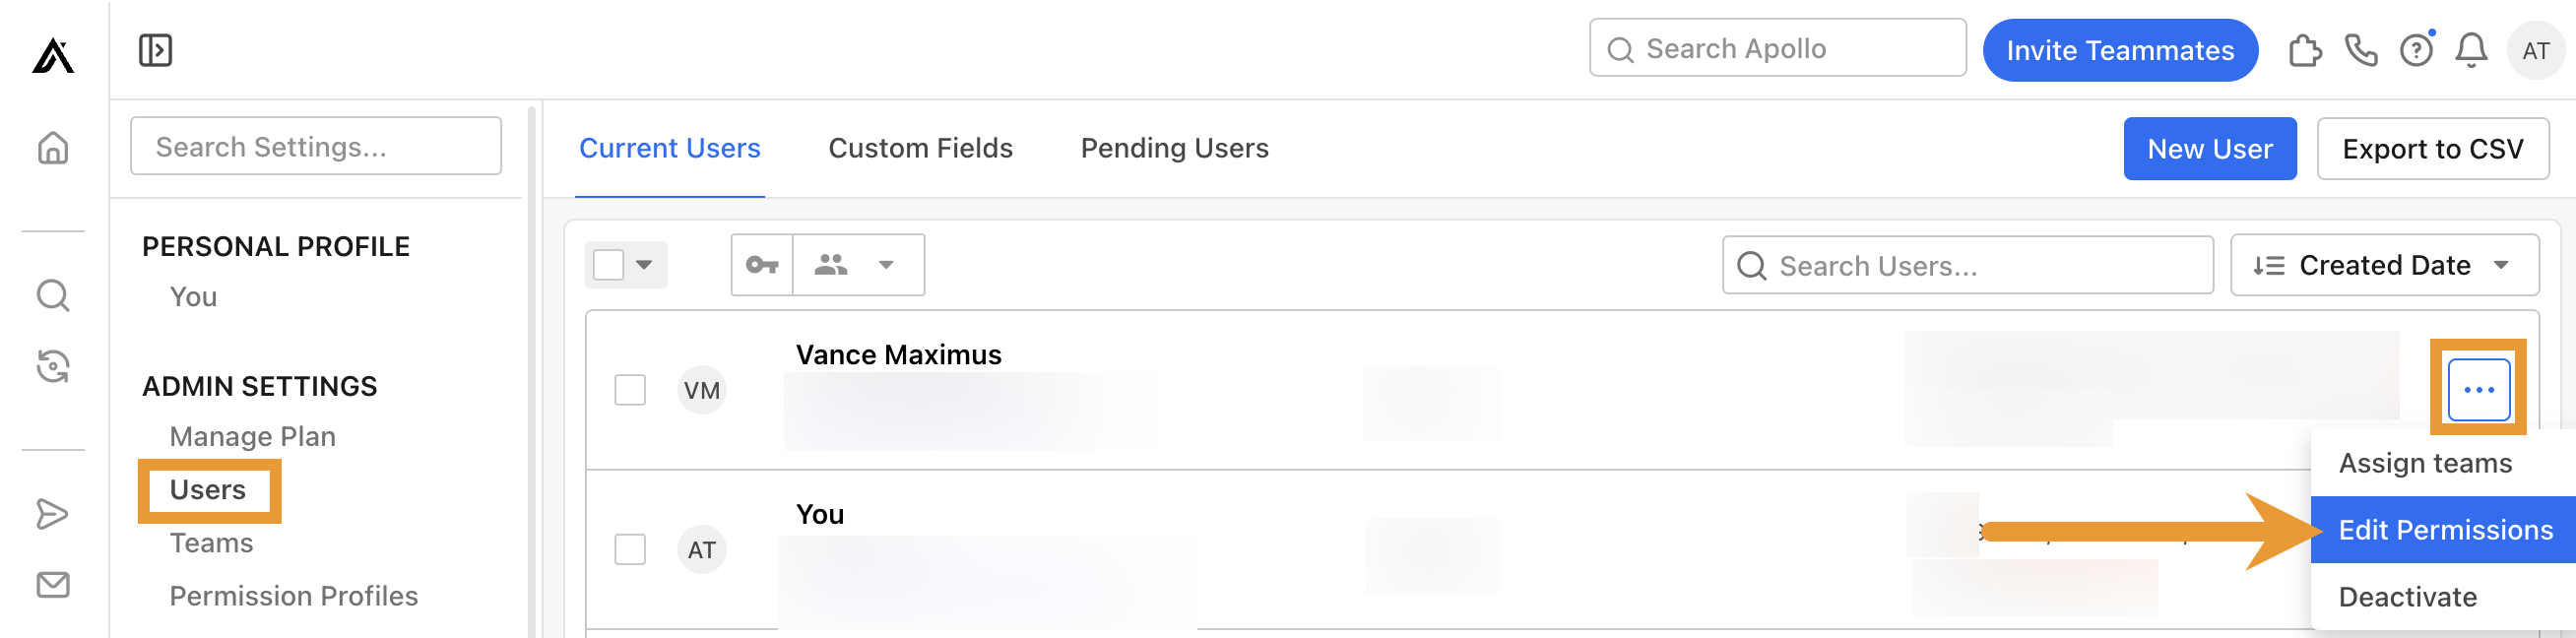 User settings in Apollo